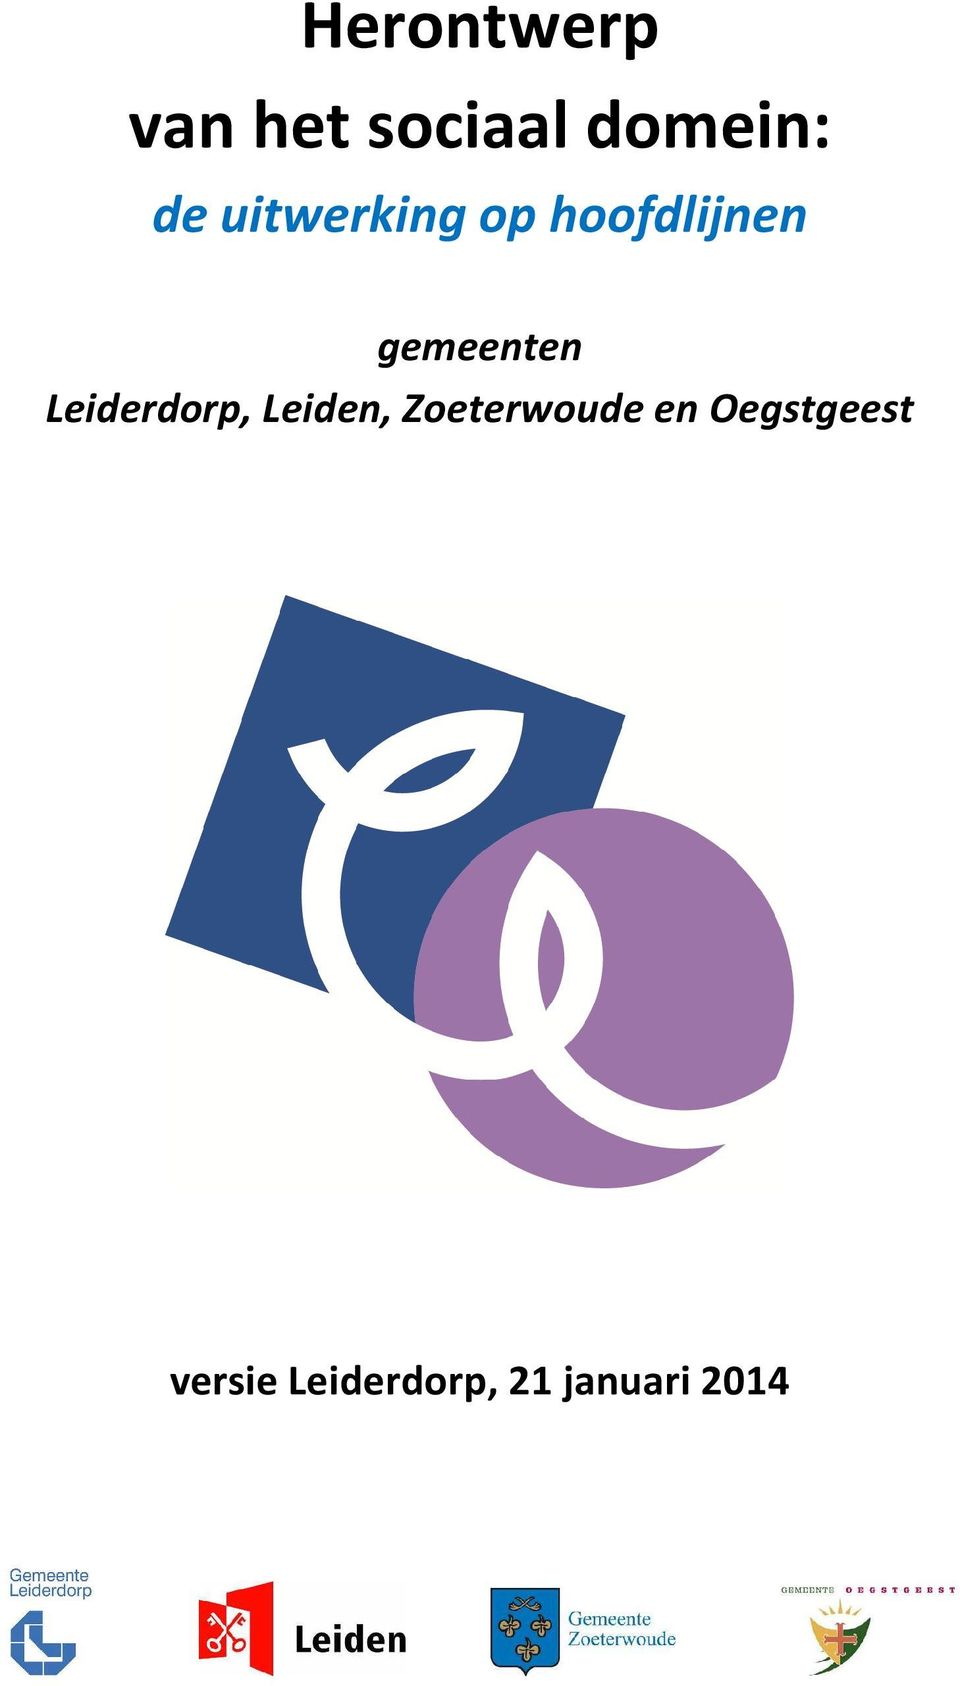 Leiderdorp, Leiden, Zoeterwoude en